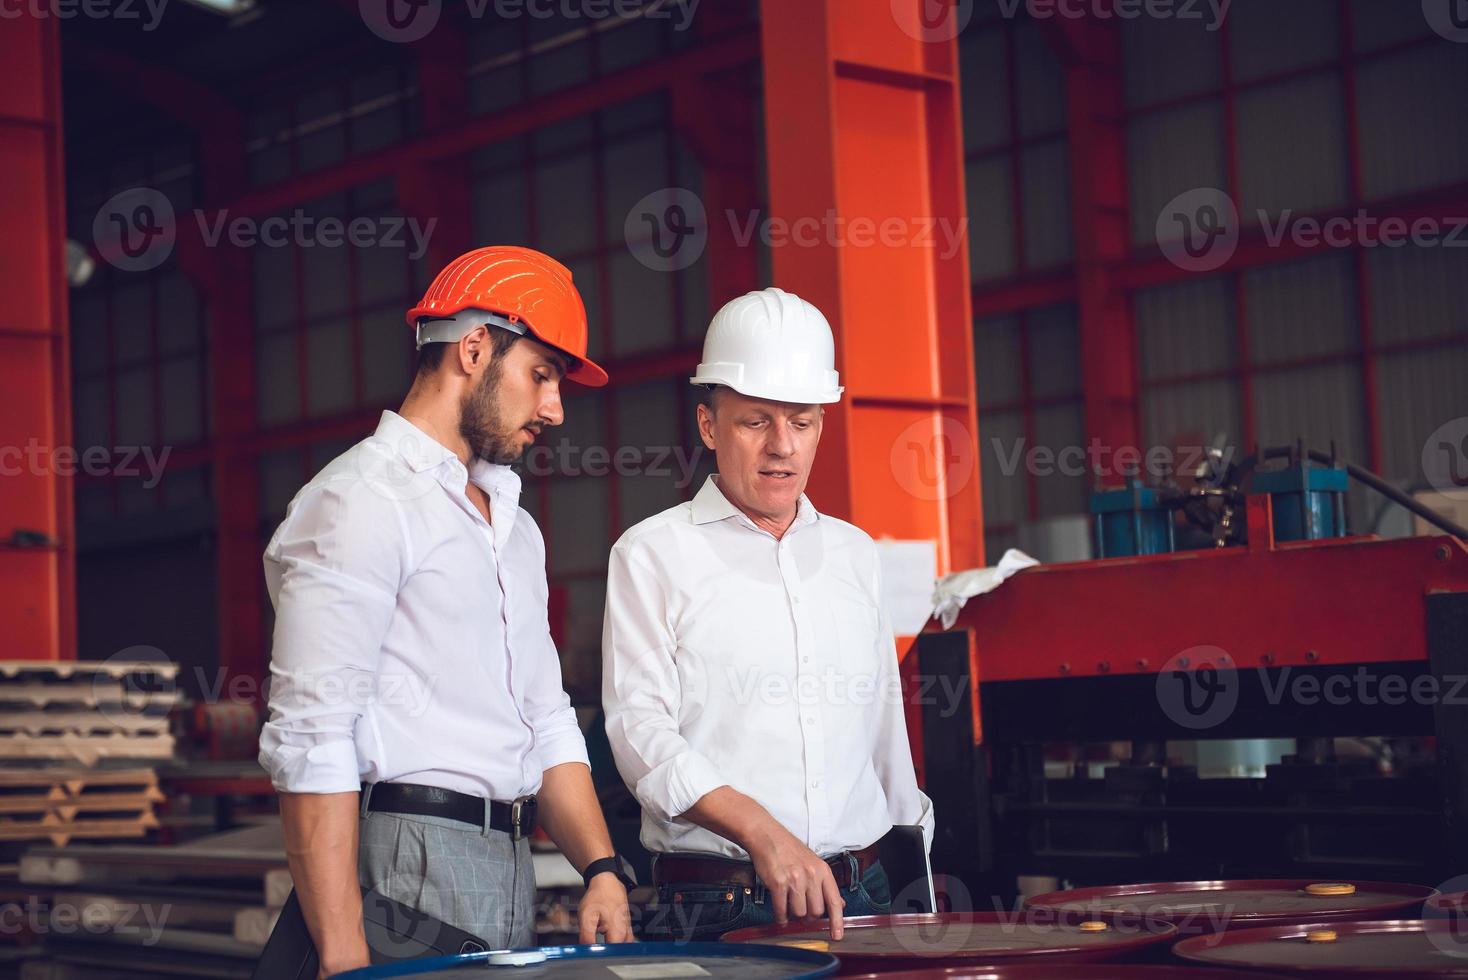 capataz operário e gerente de engenharia trabalhando juntos no local de trabalho industrial, usando capacete para segurança foto